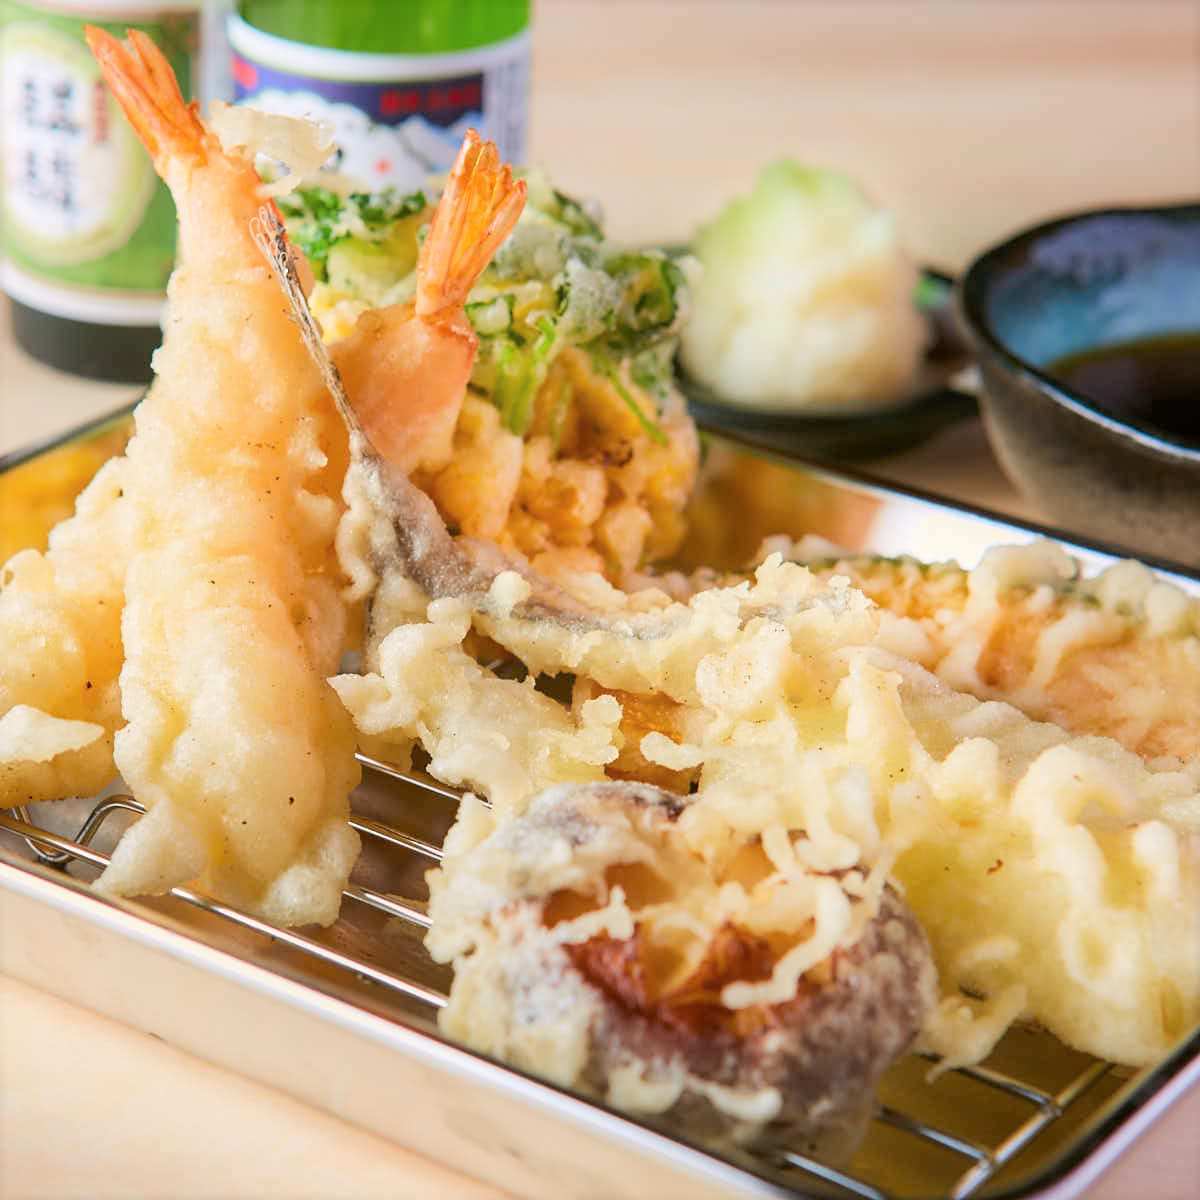 神田で本格和食をテイクアウト 4合瓶付きの晩酌セットや天ぷら コース料理まで7店を紹介 Favy ファビー